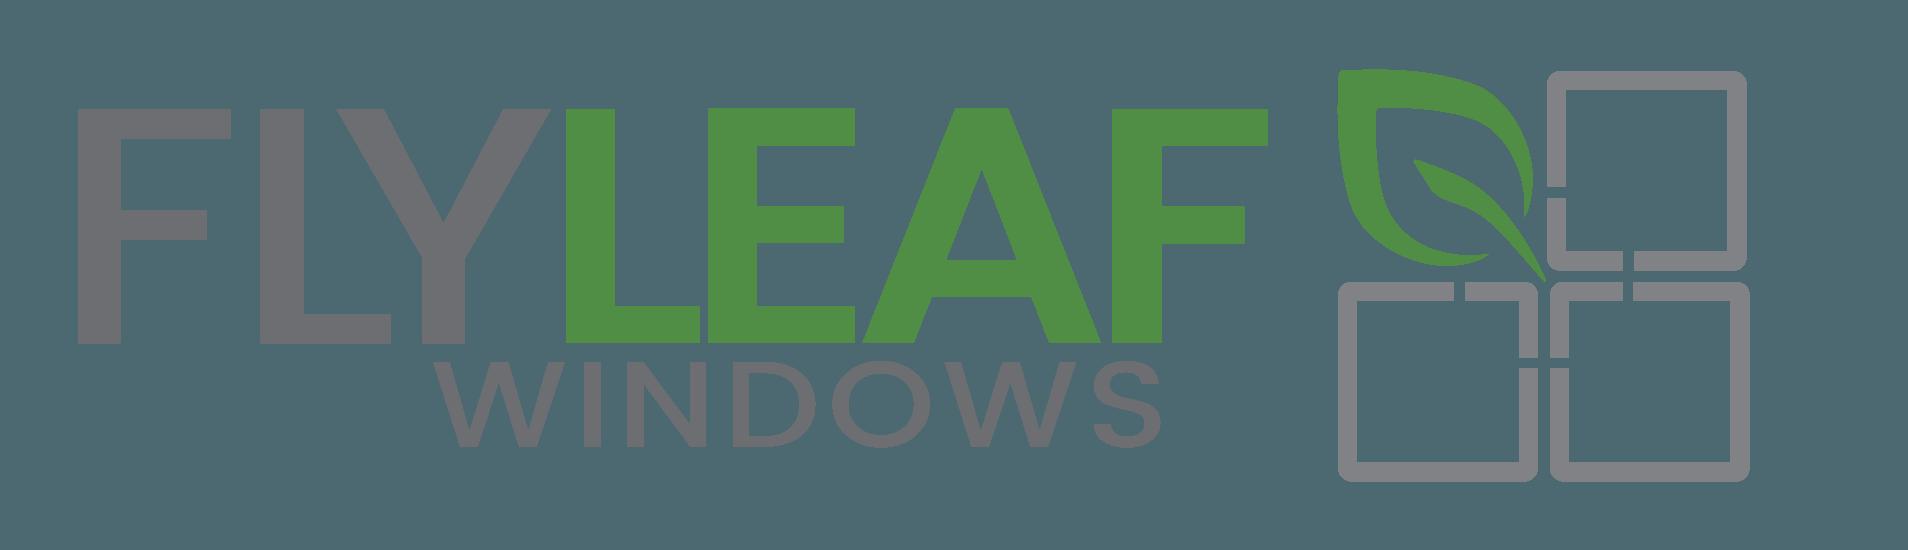 Flyleaf Logo - 1700-cw-white - Flyleaf Windows